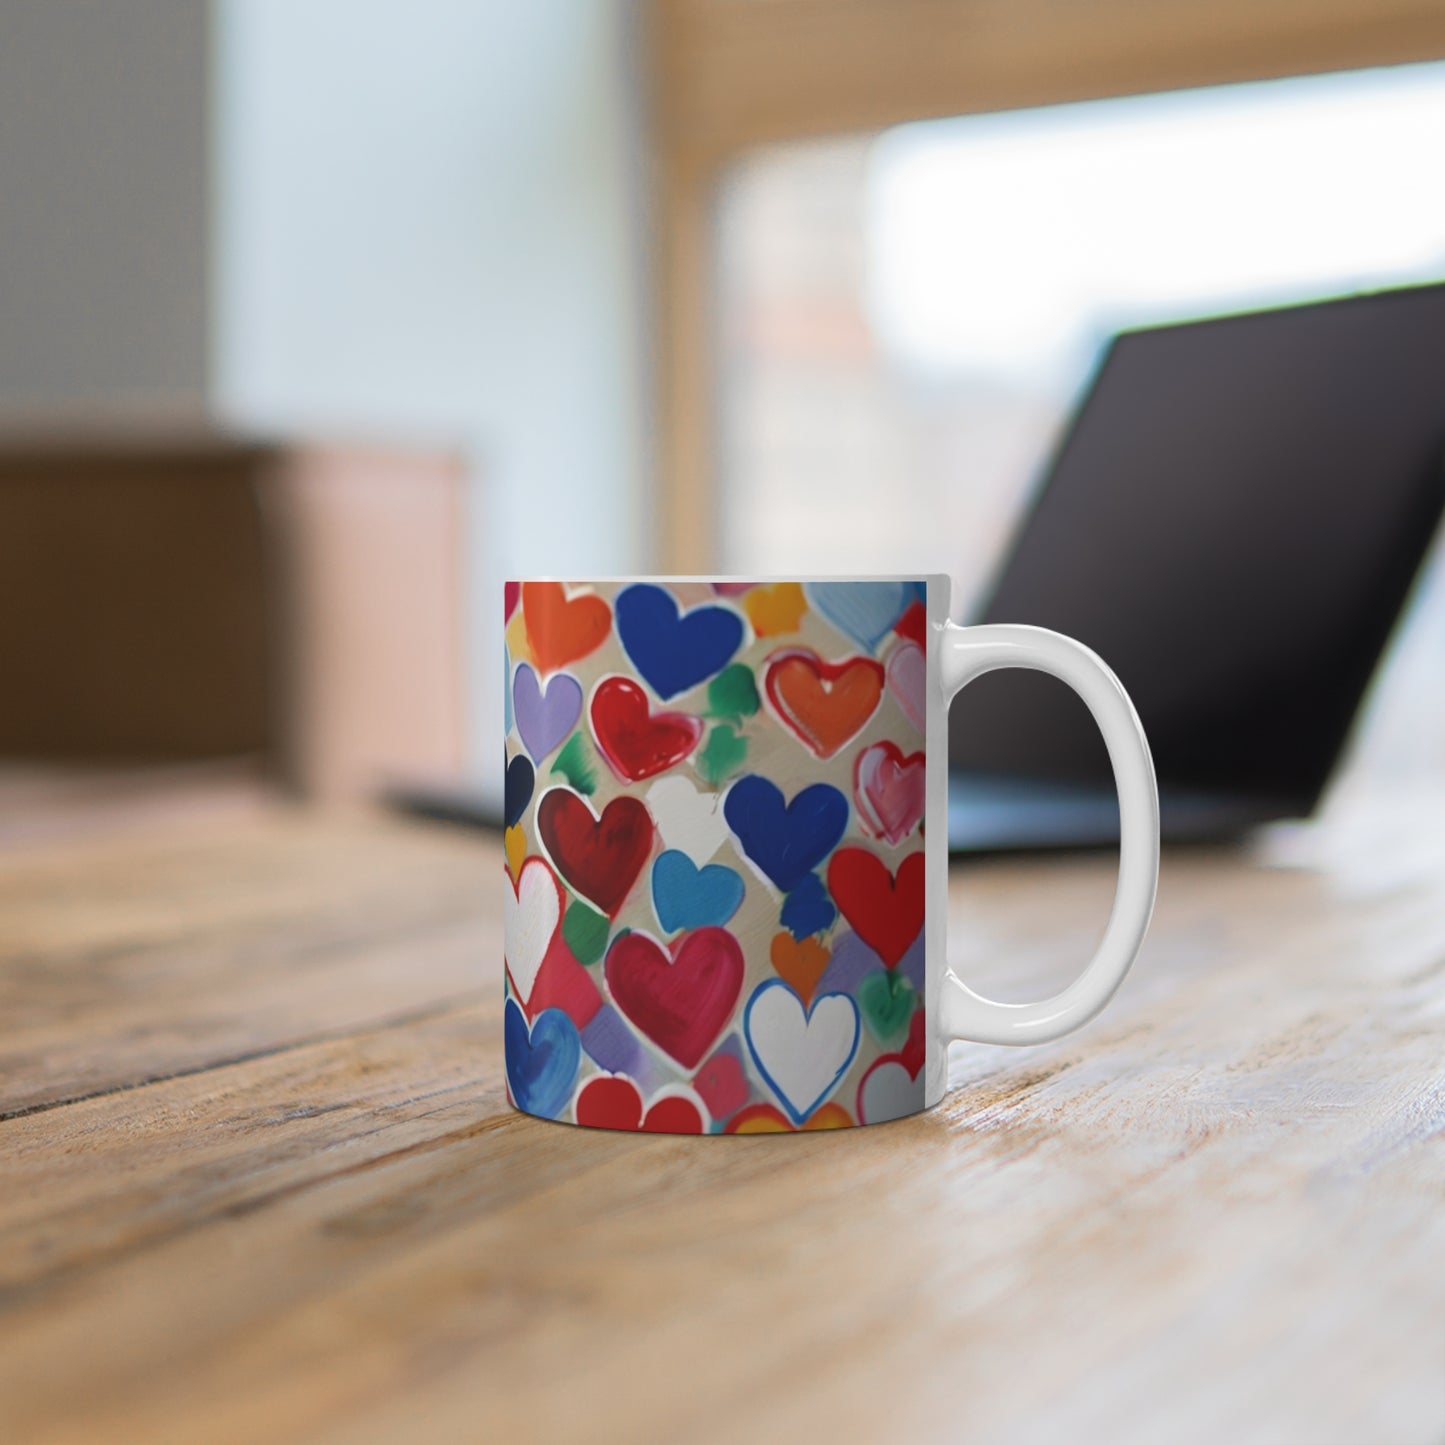 Messy Colourful Mini Love Hearts Mug - Ceramic Coffee Mug 11oz